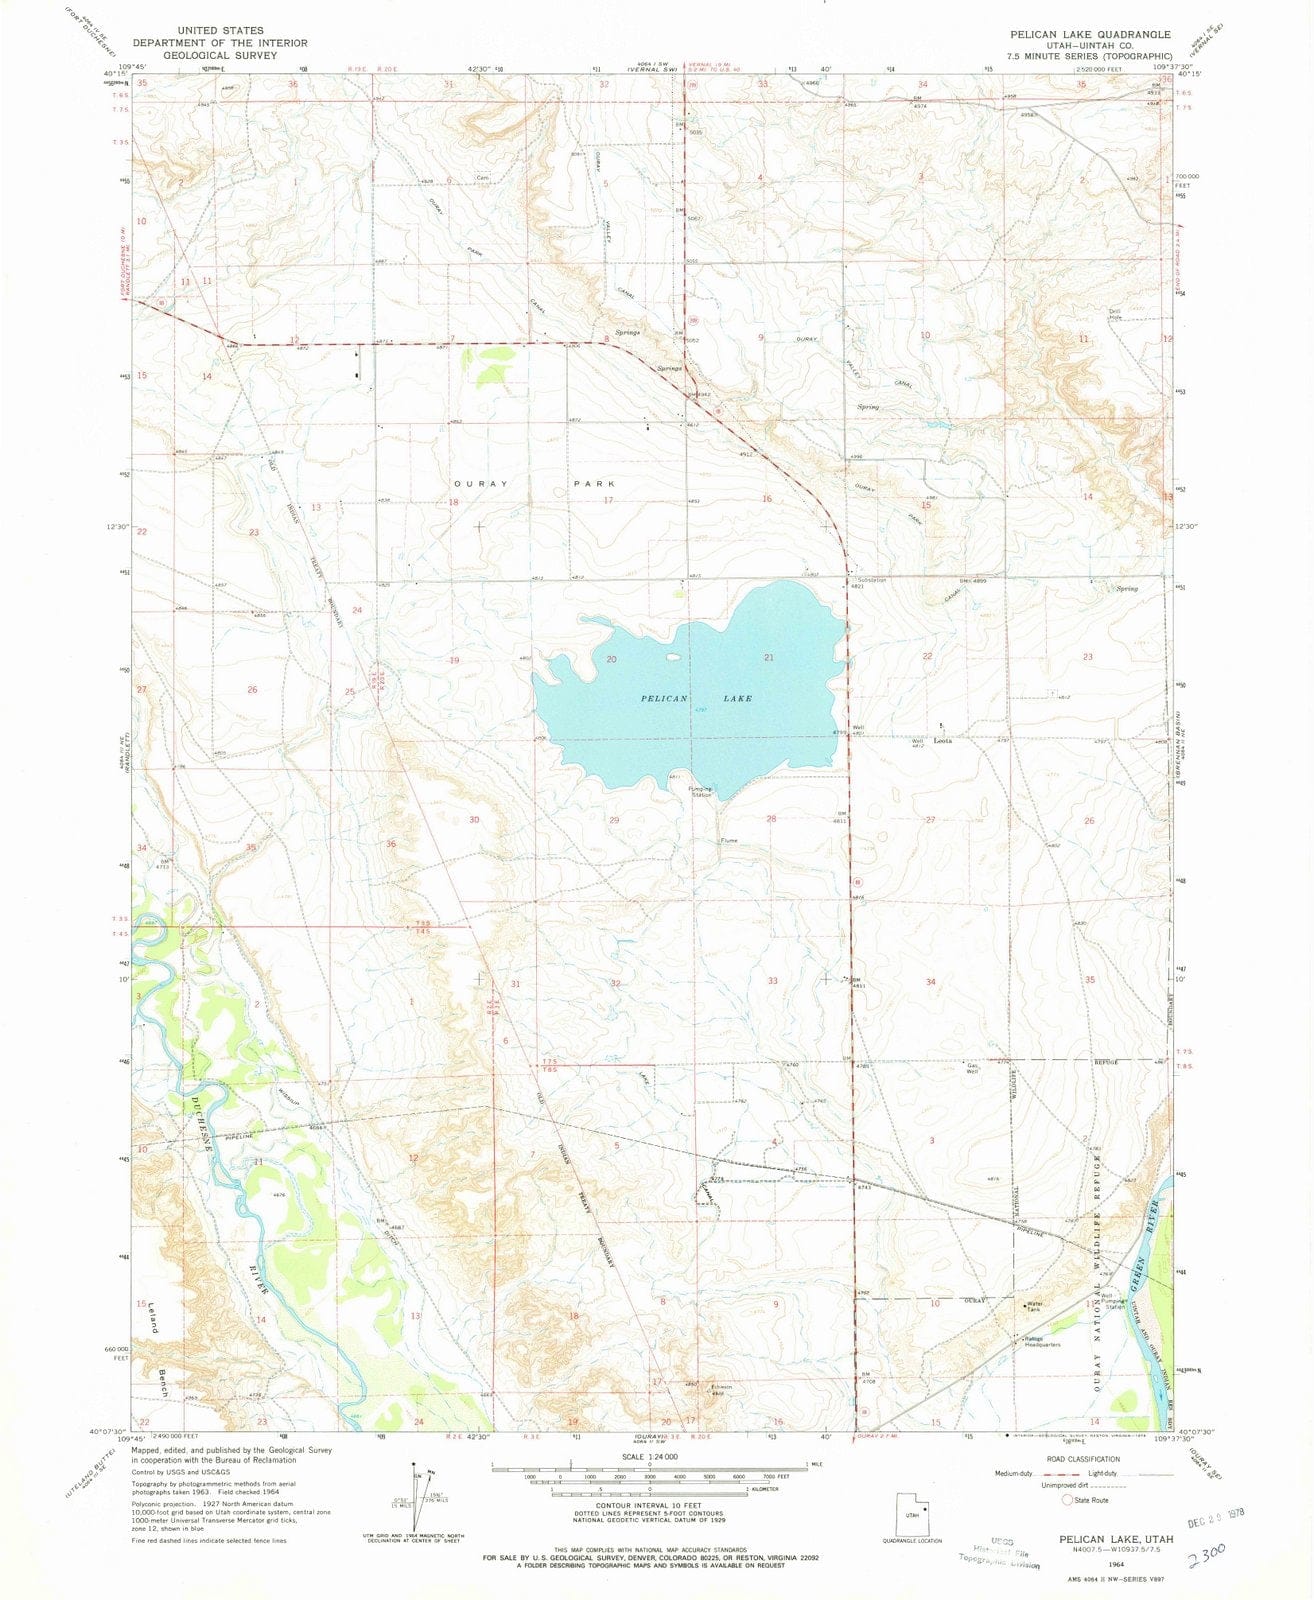 1964 Pelican Lake, UT - Utah - USGS Topographic Map